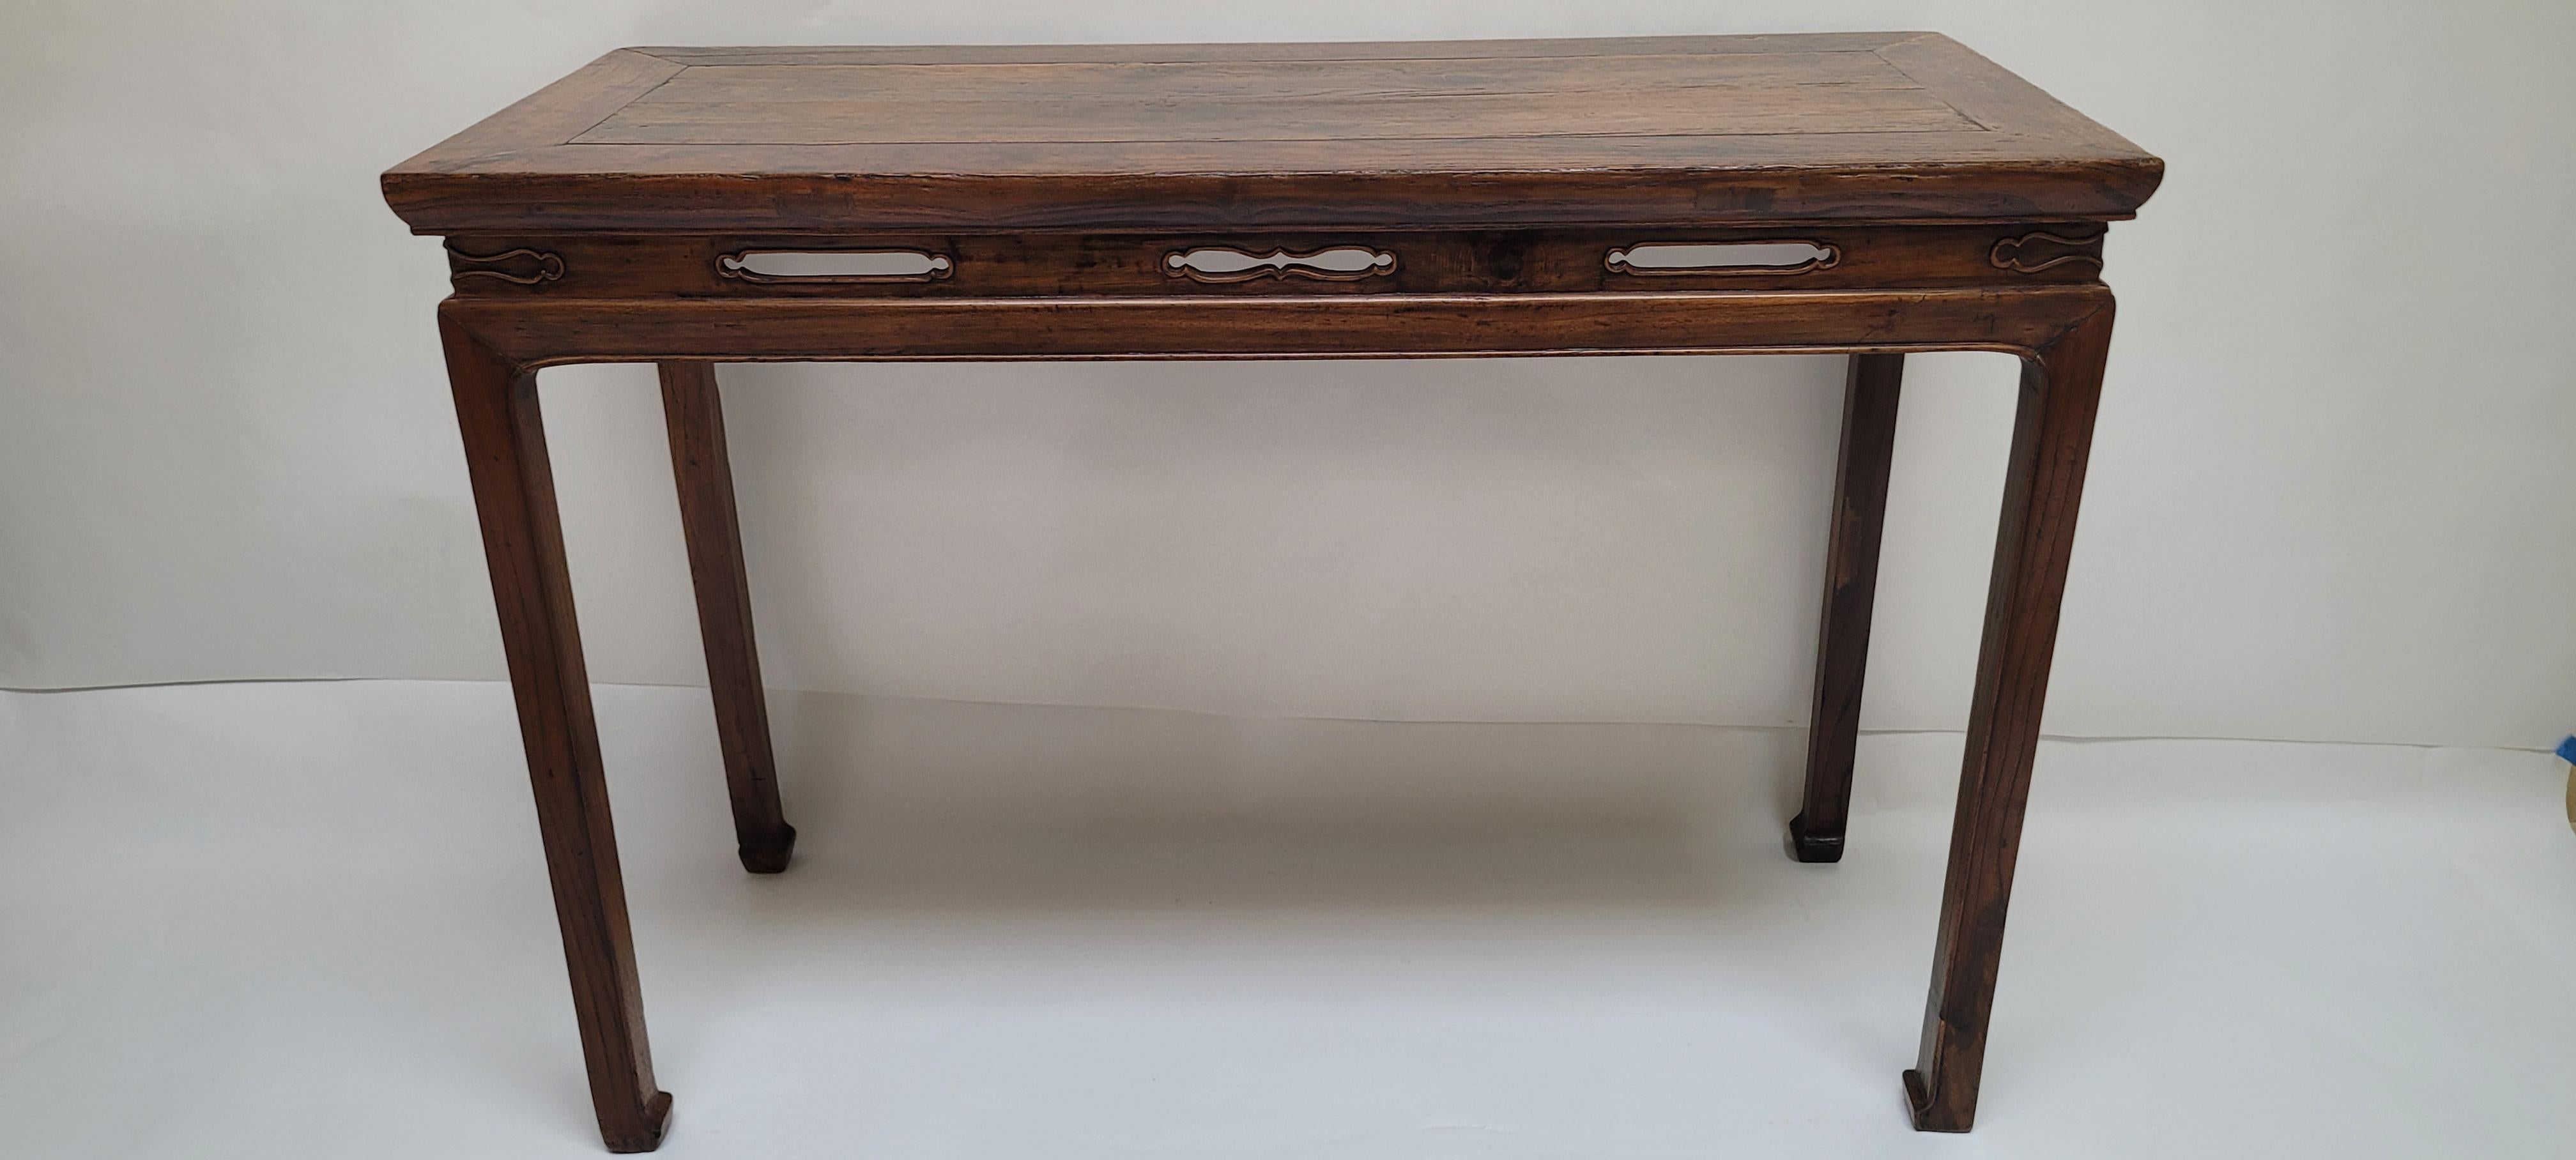 Cette table a été utilisée comme petite table de peinture. La forme et le design de la table sont typiques du style Ming avec des pieds d'angle droits et une taille haute. Le cadre supérieur est perlé sur les bords concaves bas. La taille est